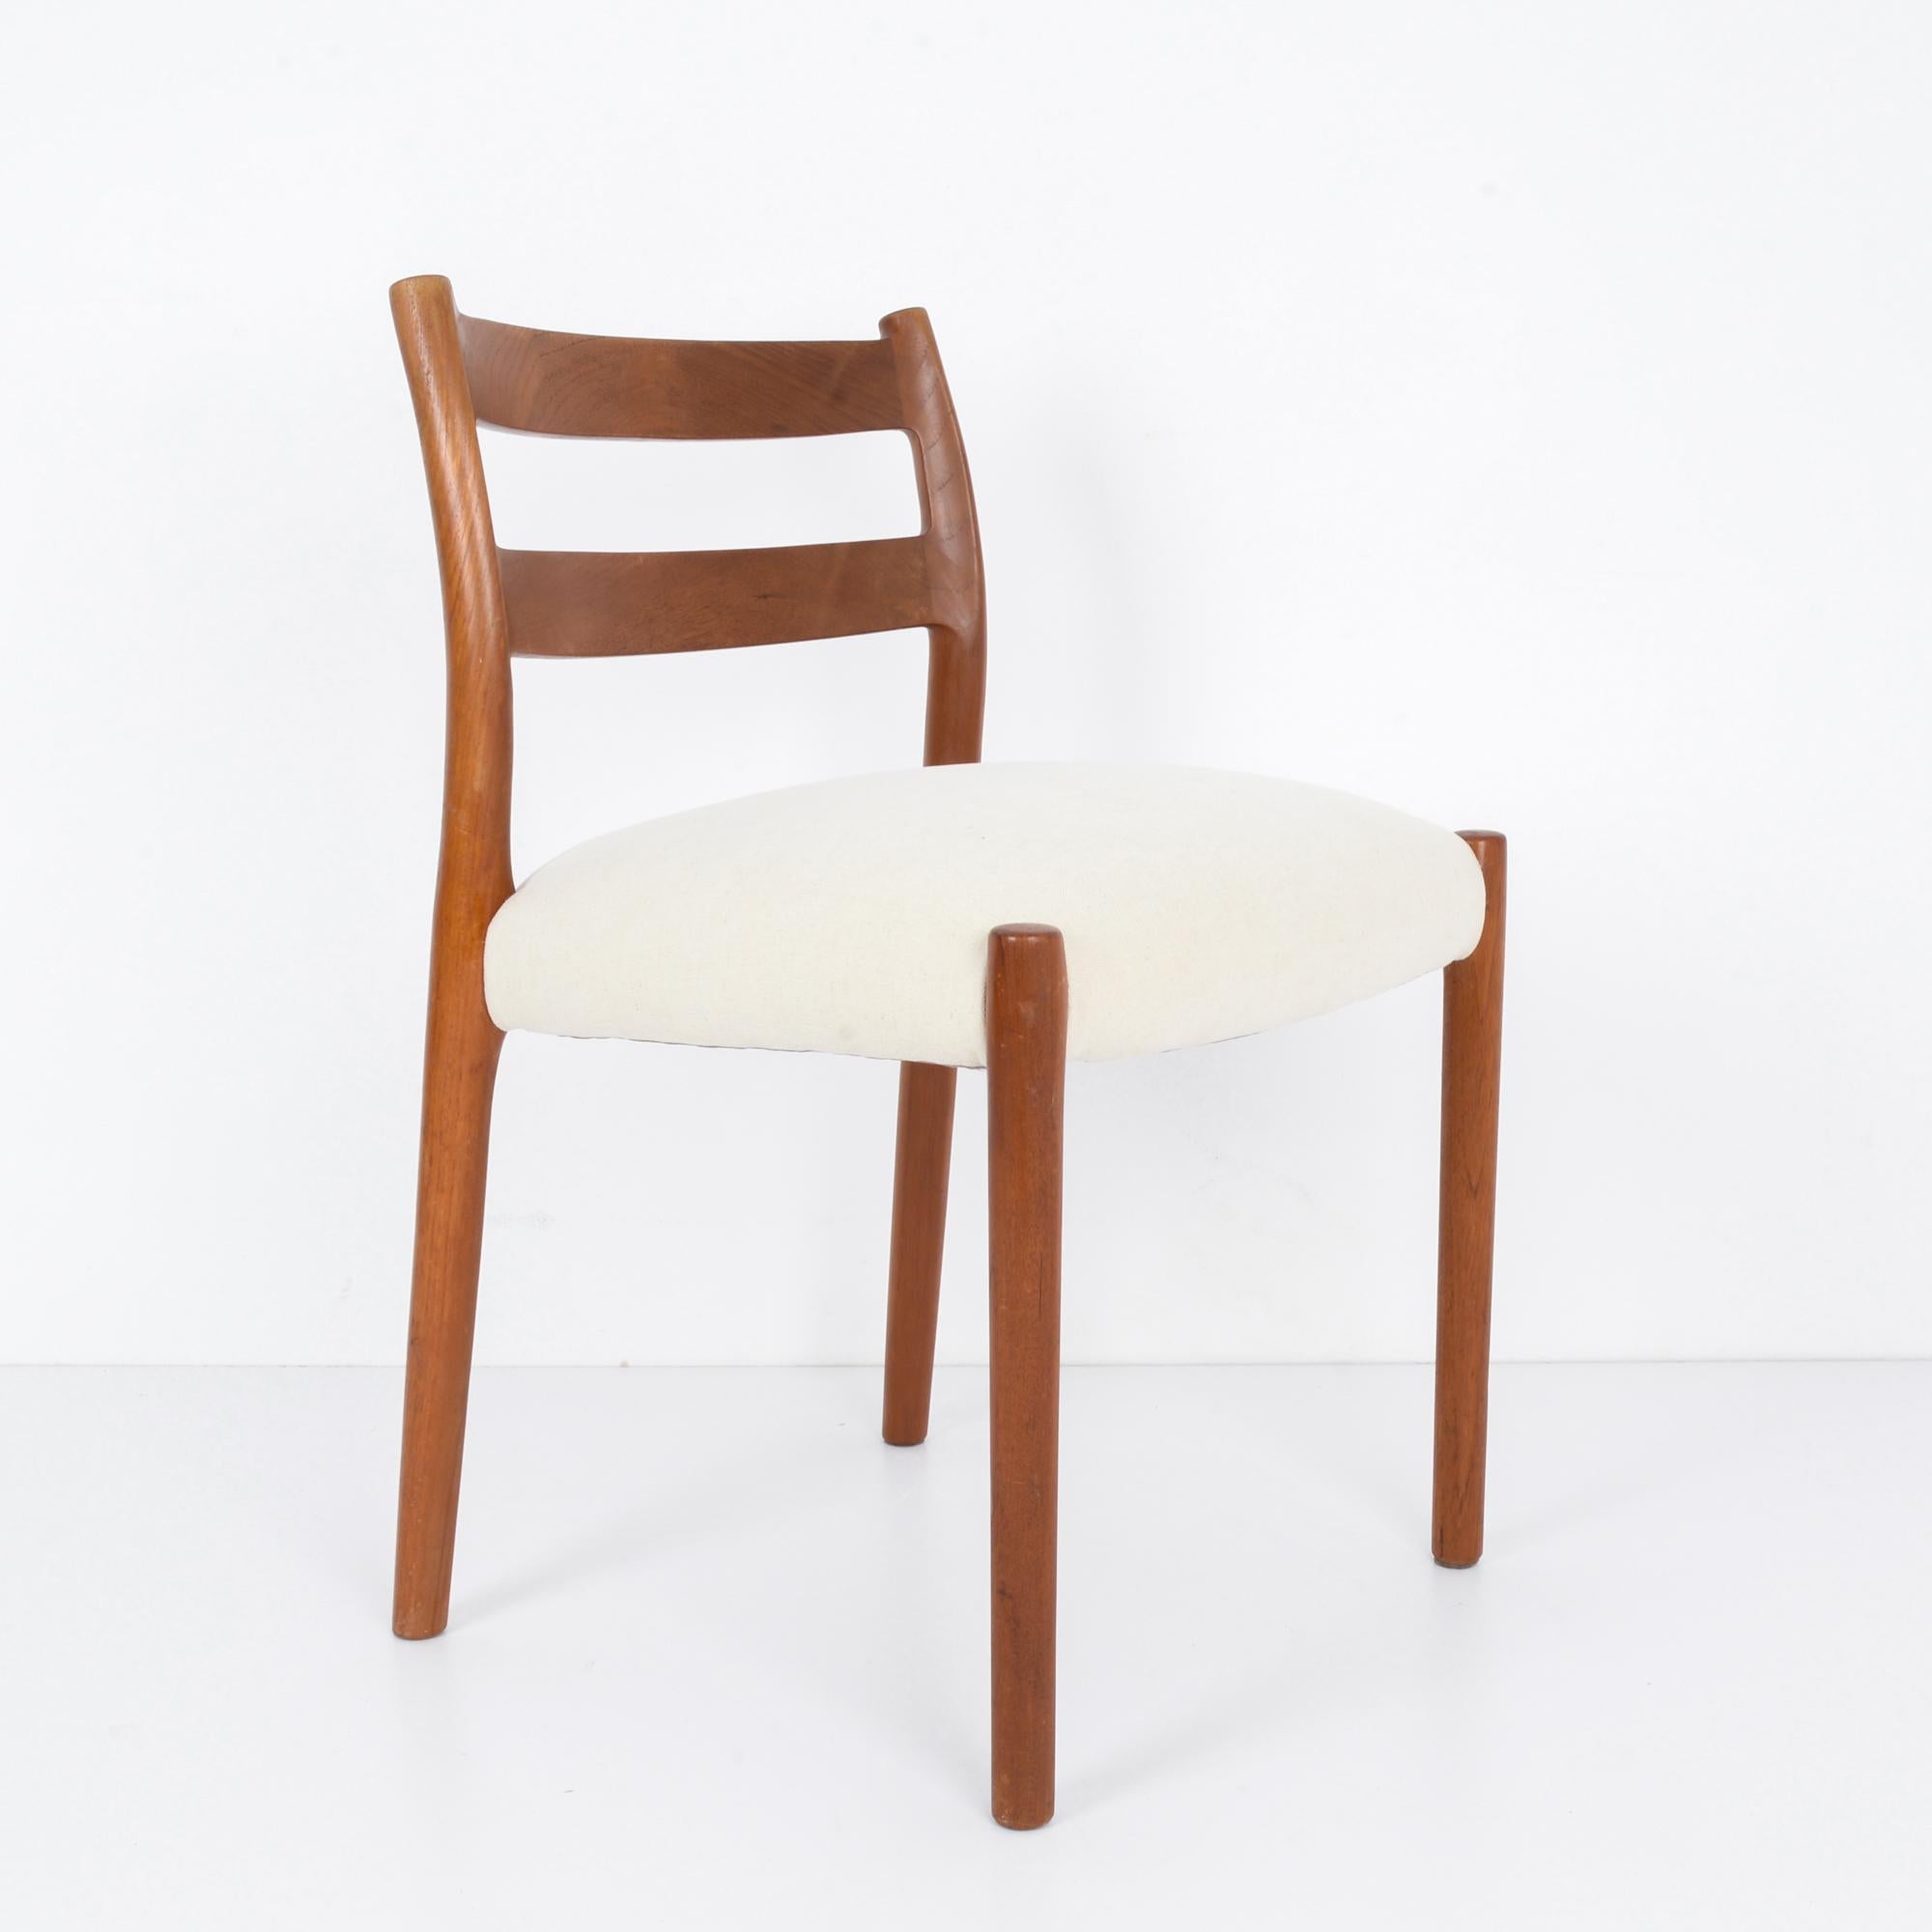 Dans le paysage du design innovant du Danemark des années 1960, cette chaise en bois avec une assise rembourrée incarne la sophistication épurée et le confort ergonomique de l'époque. Réalisée avec une attention méticuleuse aux détails, cette pièce